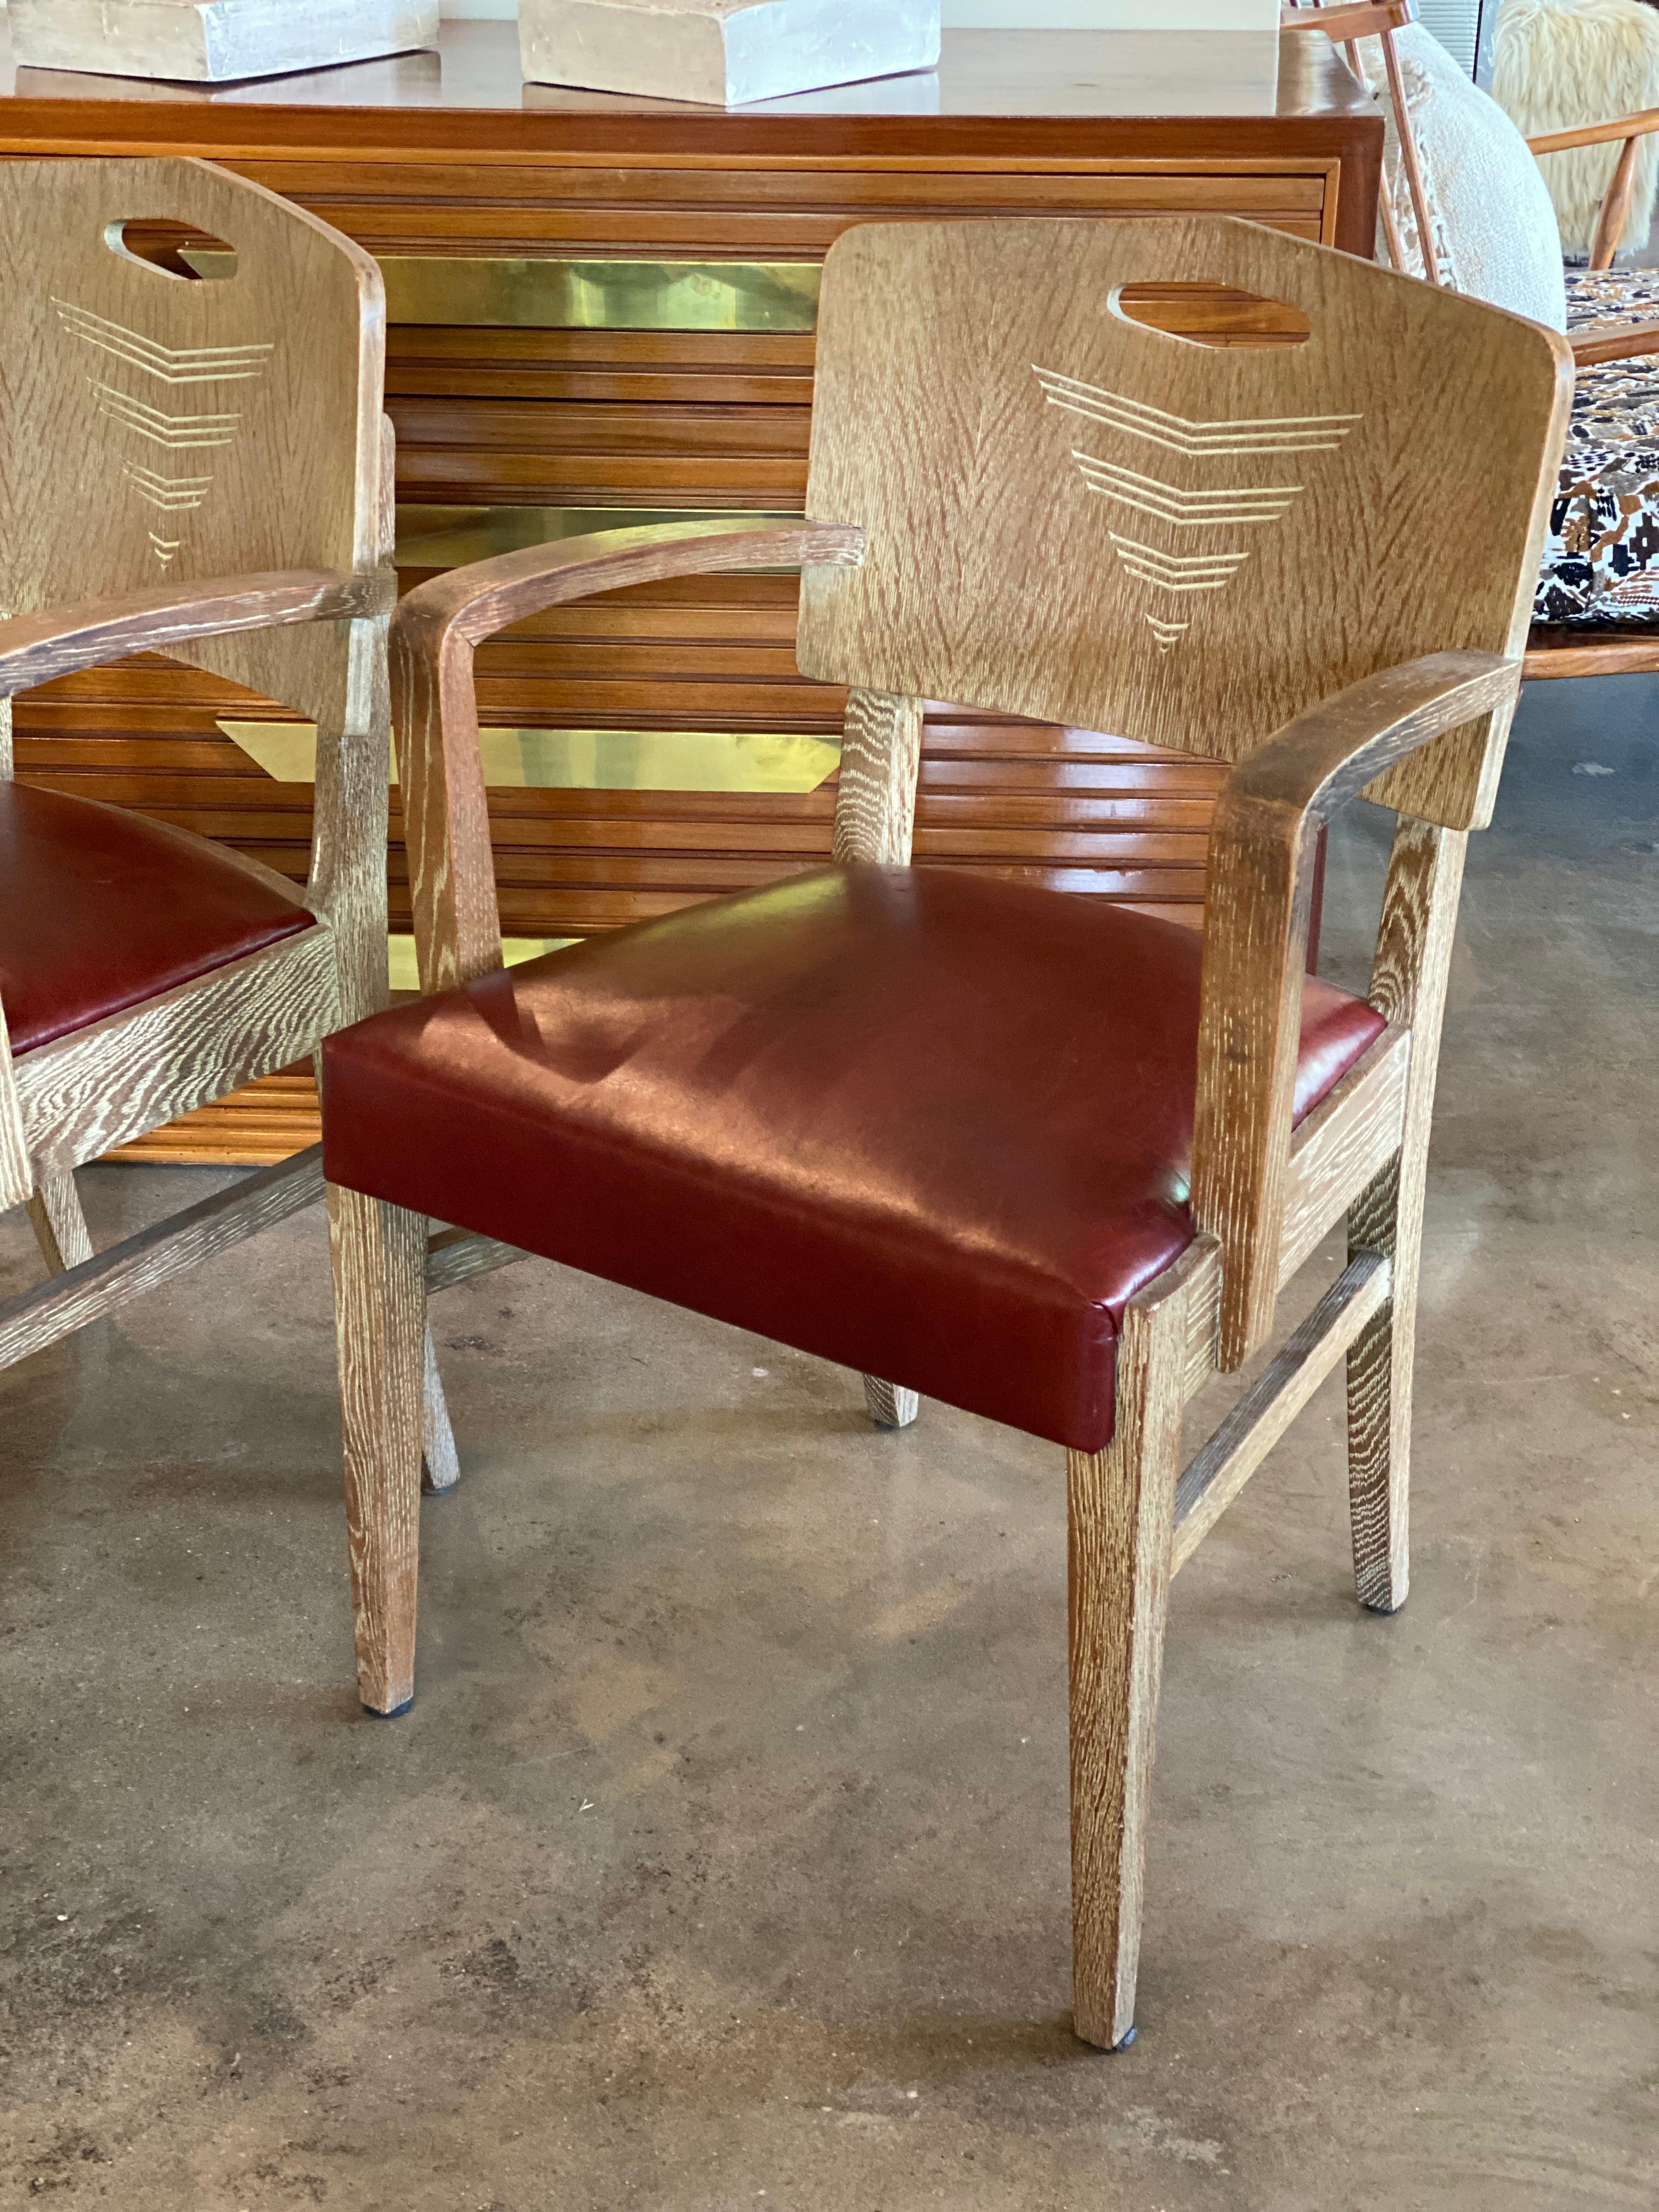 Ein Paar Art-Déco-Stühle mit keramischer Oberfläche auf Eiche, entworfen vom berühmten Schweizer Architekten Michel Polak. Neu gepolsterte Sitze in ochsenblutrotem/maroonfarbenem Leder. Die Stühle sind wahrscheinlich eine frühe Anfertigung von